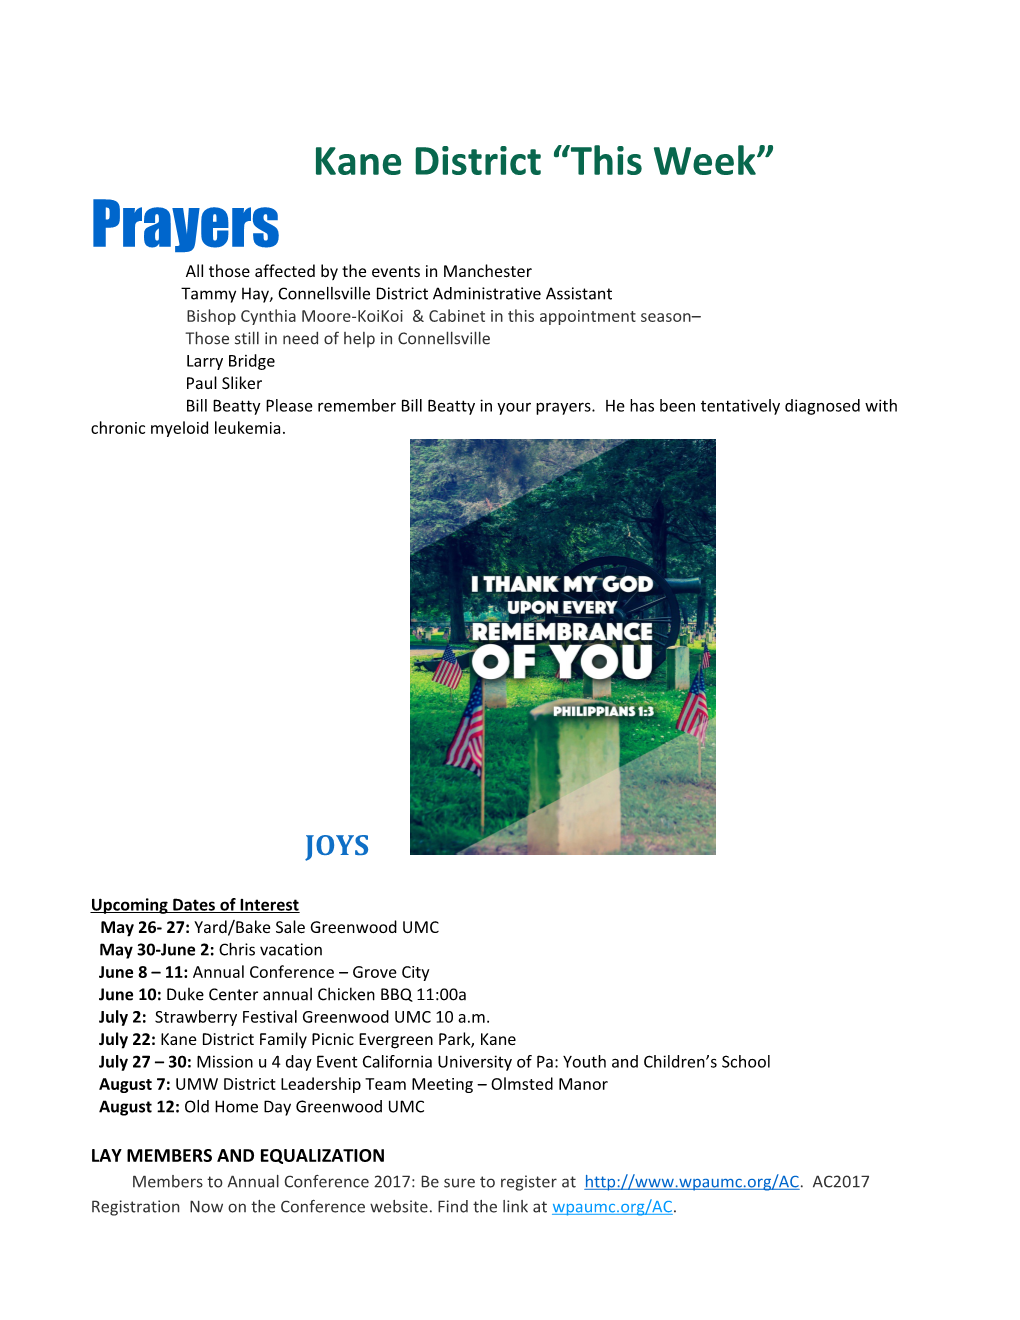 Kane District This Week